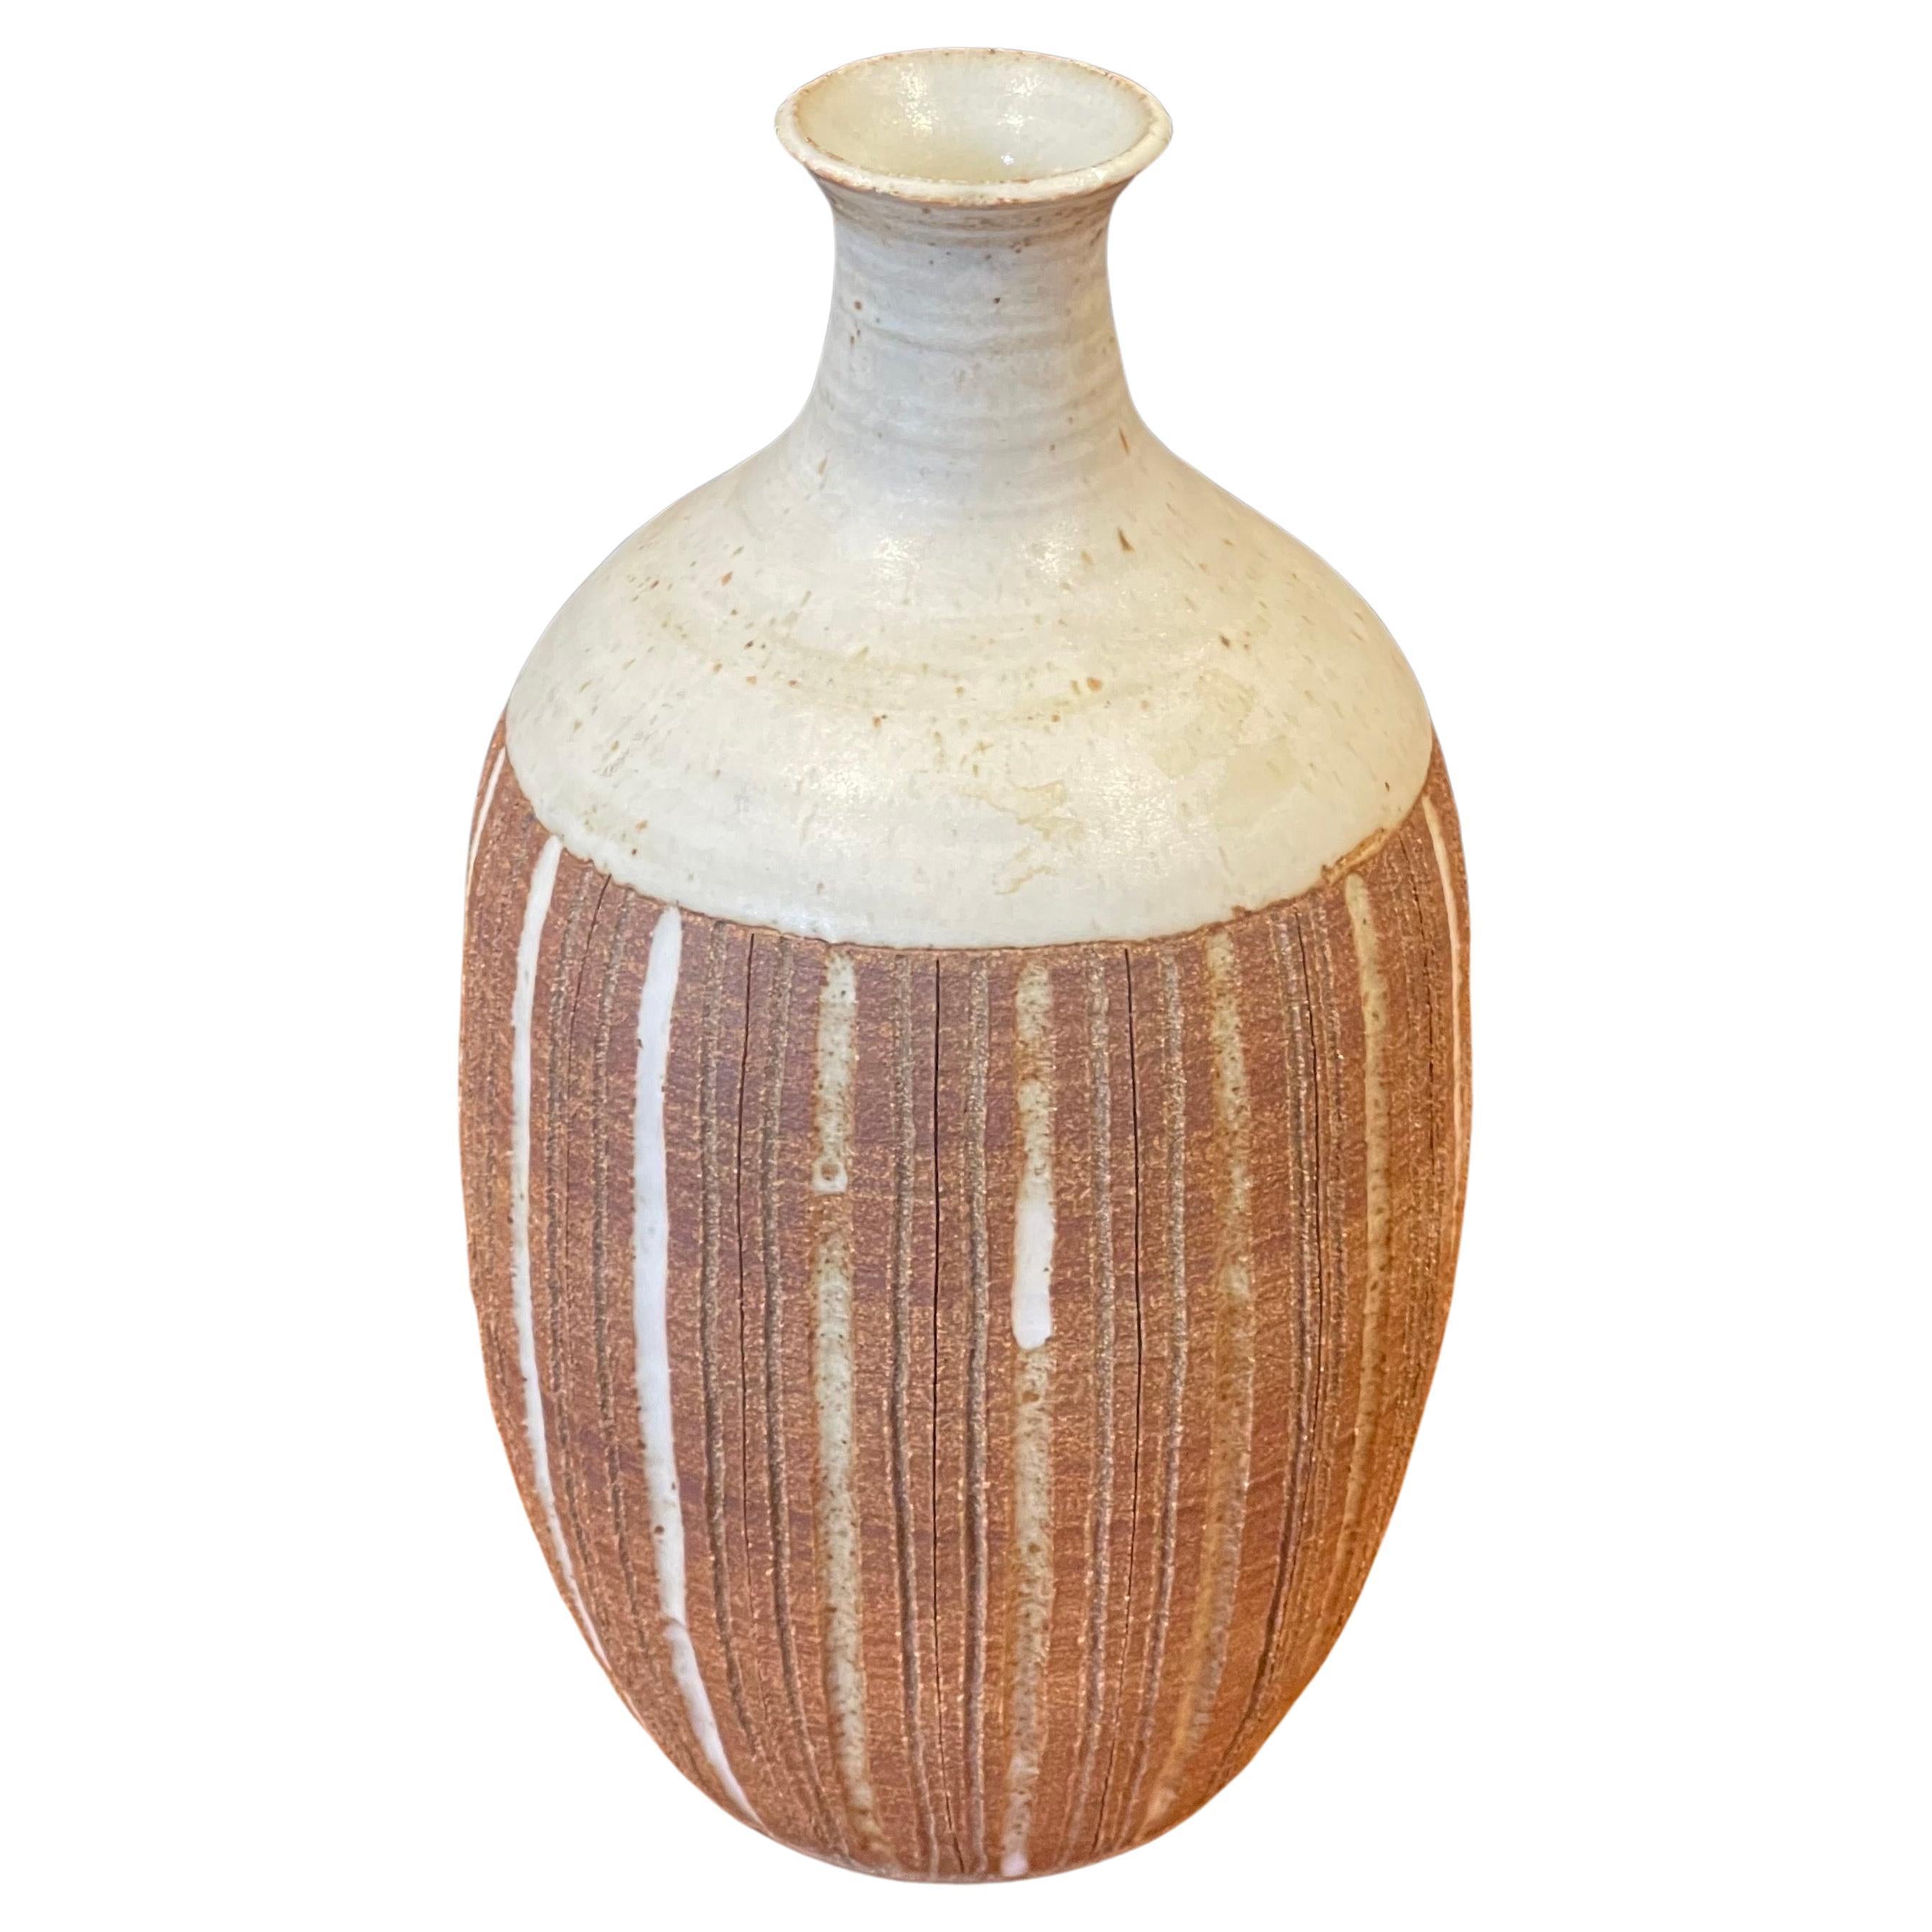 Un très beau vase en grès du studio californien de l'artiste Barbara Moorehead de San Diego, vers les années 1970, avec de superbes tons de terre beige et brune. Le vaisseau a une conception, une apparence et une forme merveilleuses et mesure 5,5 